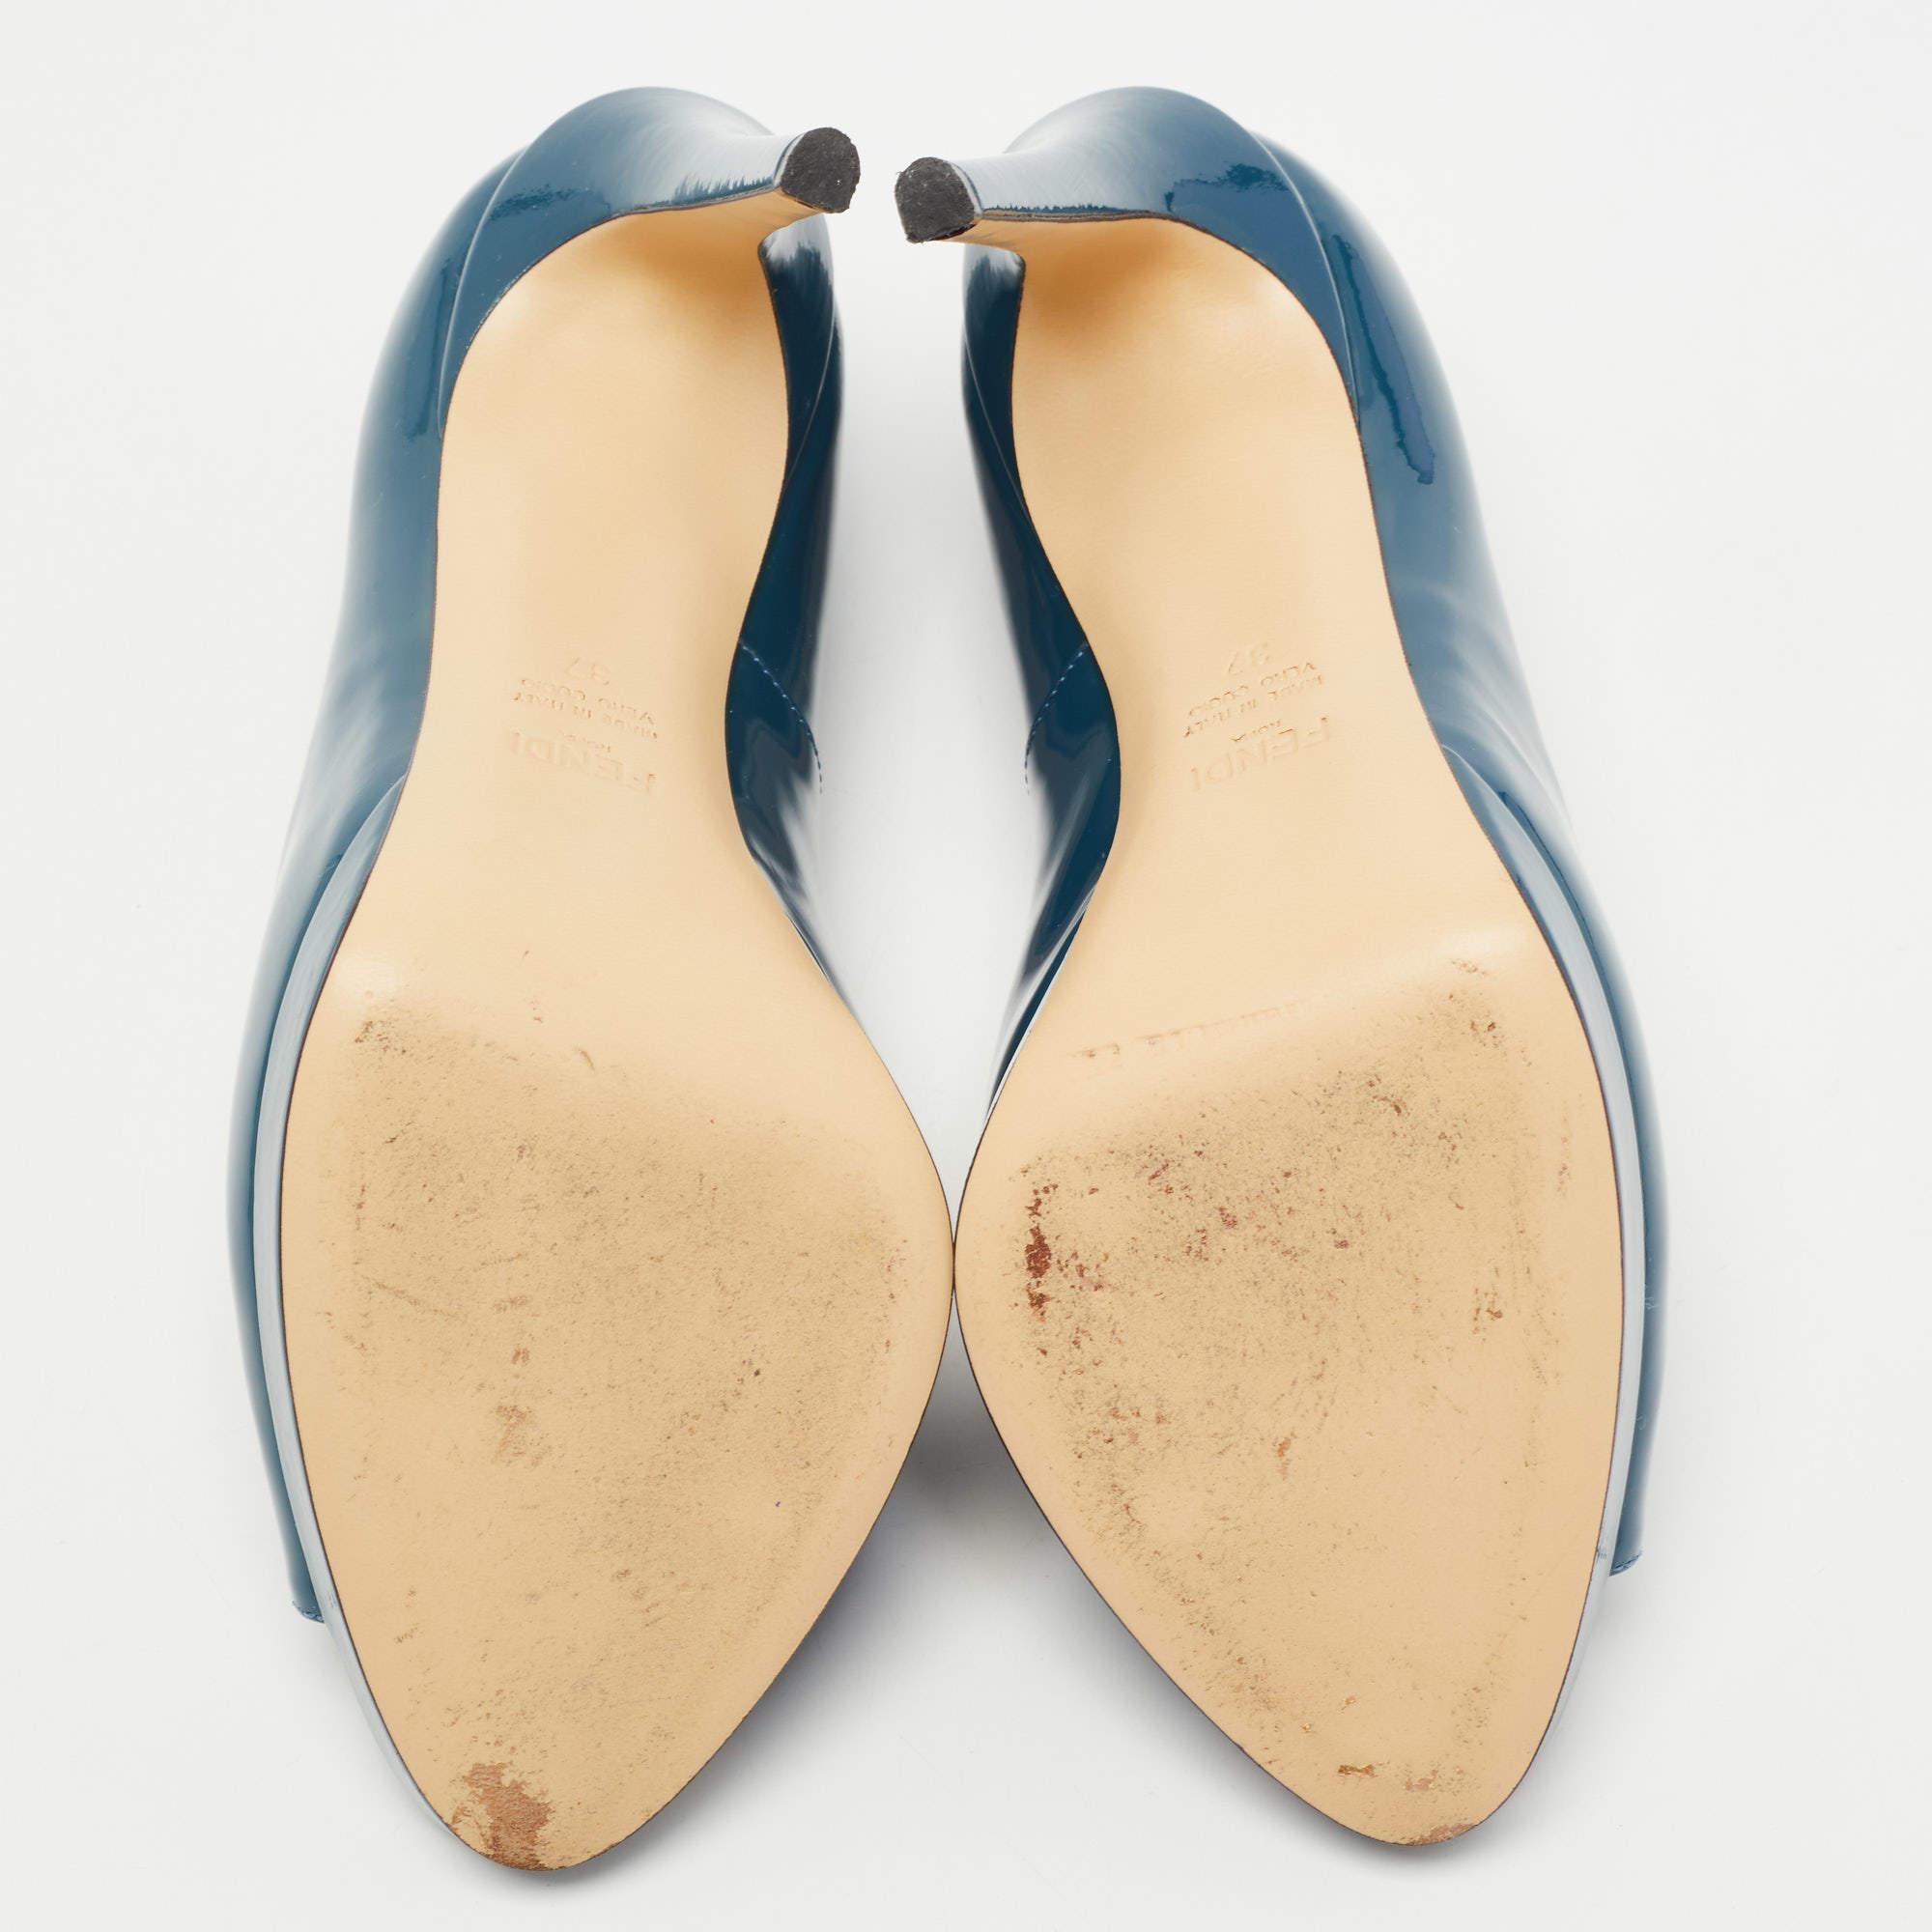 Fendi Blue Patent Leather Fendista Platform Peep Toe Pumps Size 37 1